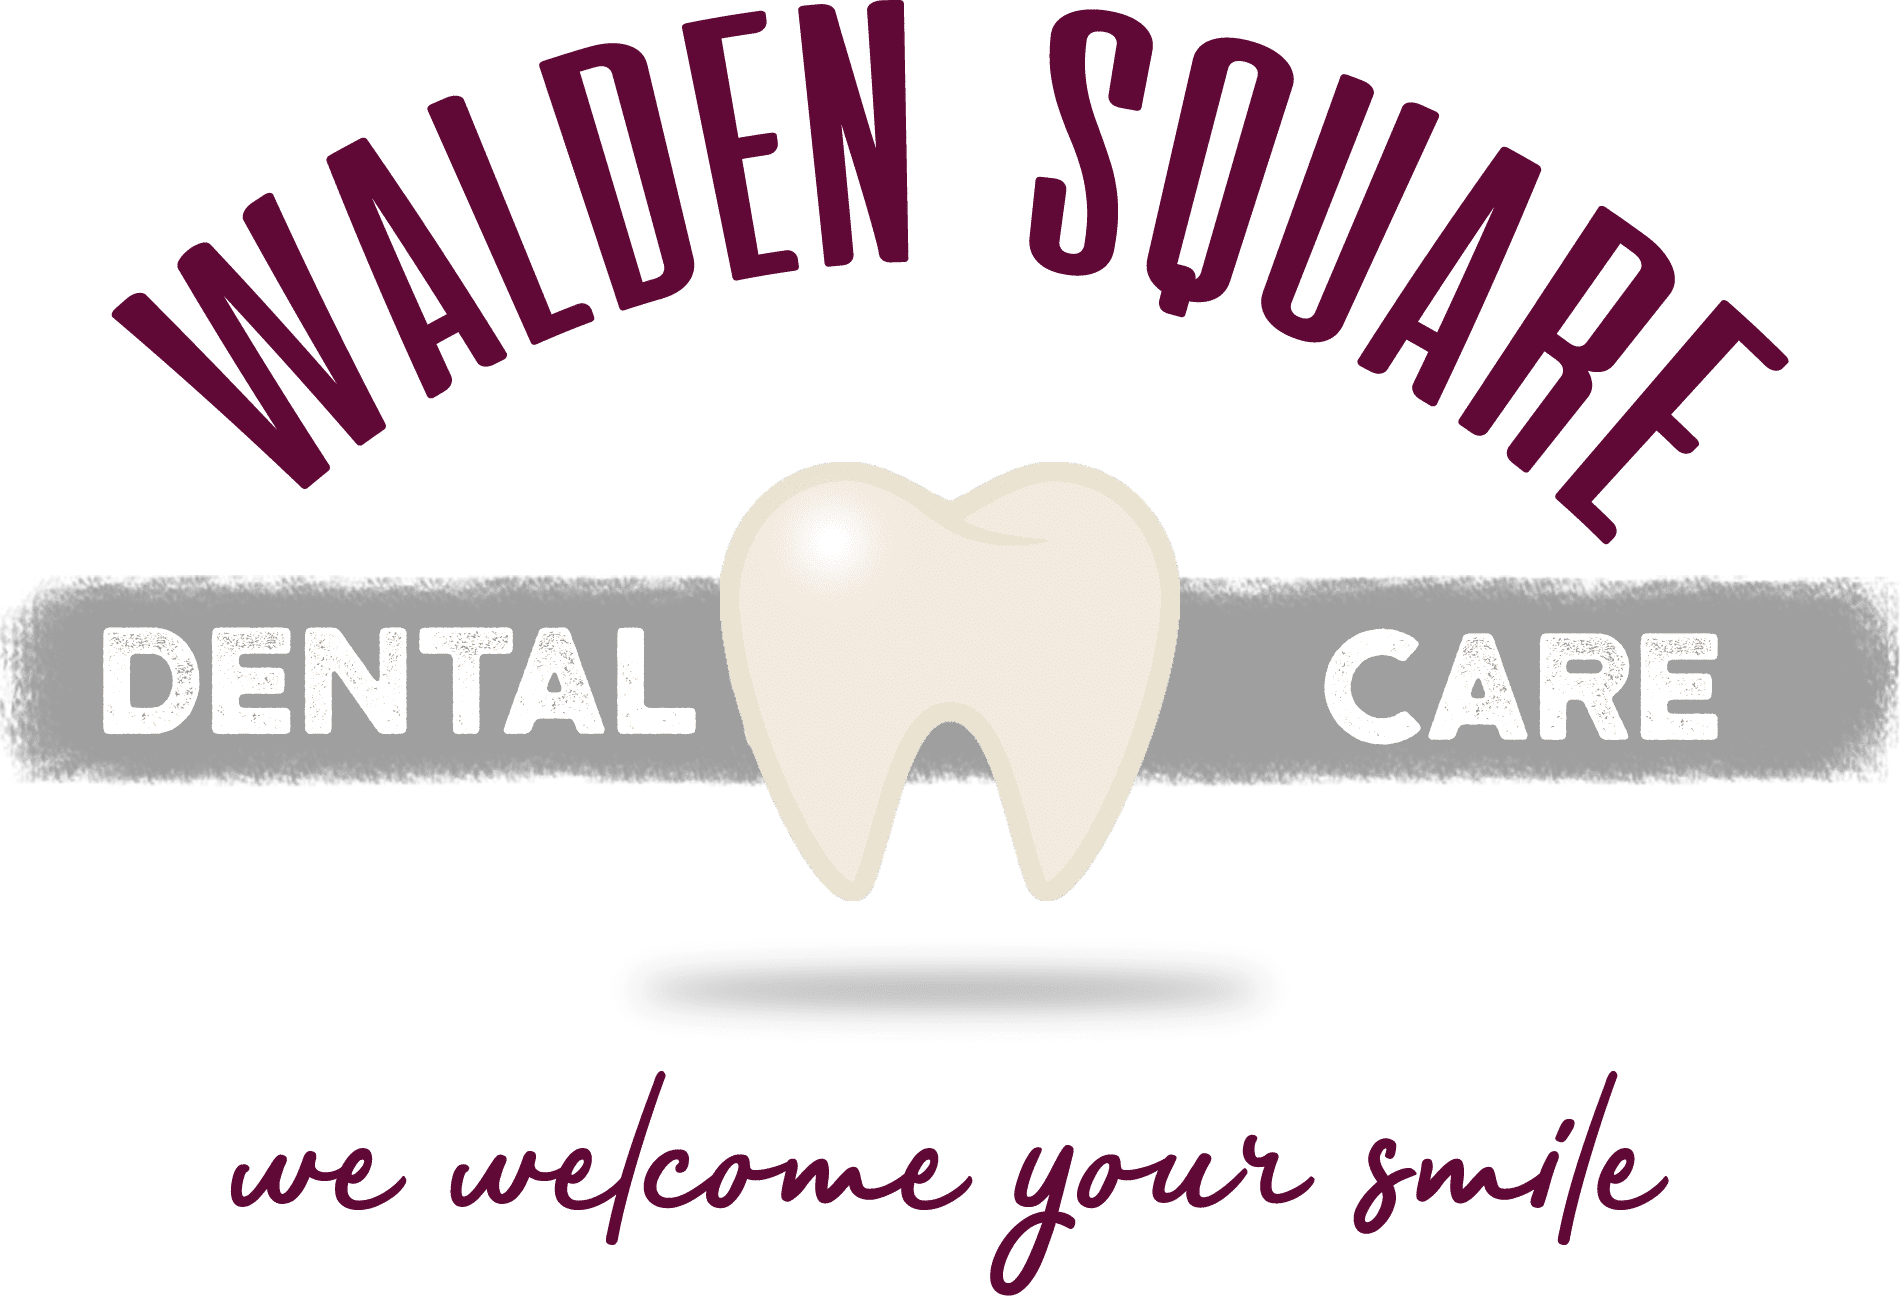 Walden-square-dental-logo